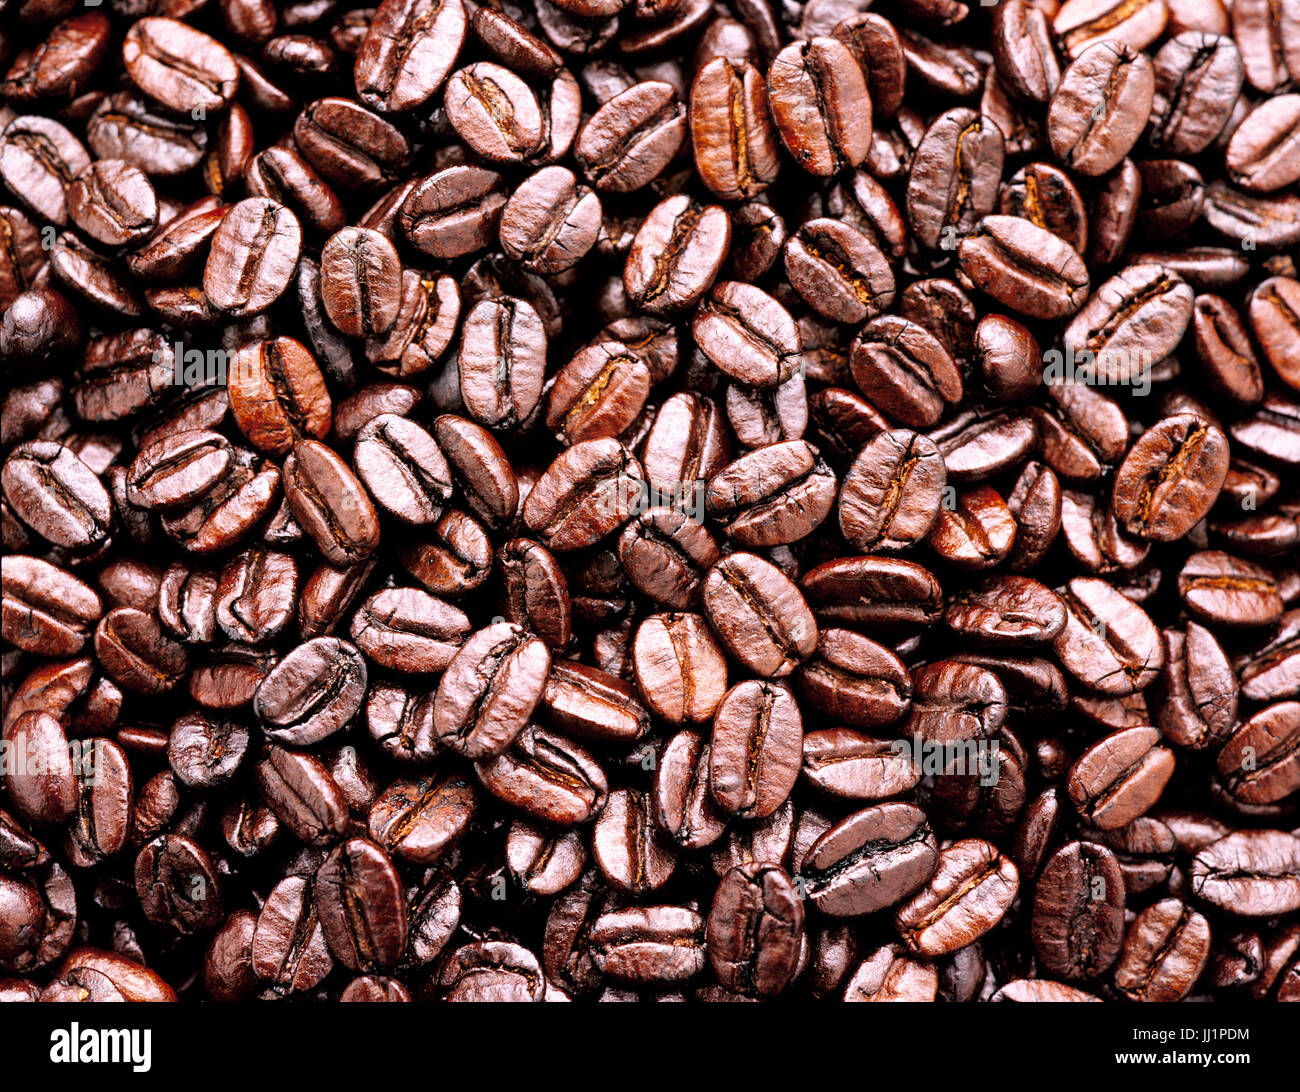 coffee beans, Porto alegre, Rio grande do Sul, Brazil. Stock Photo